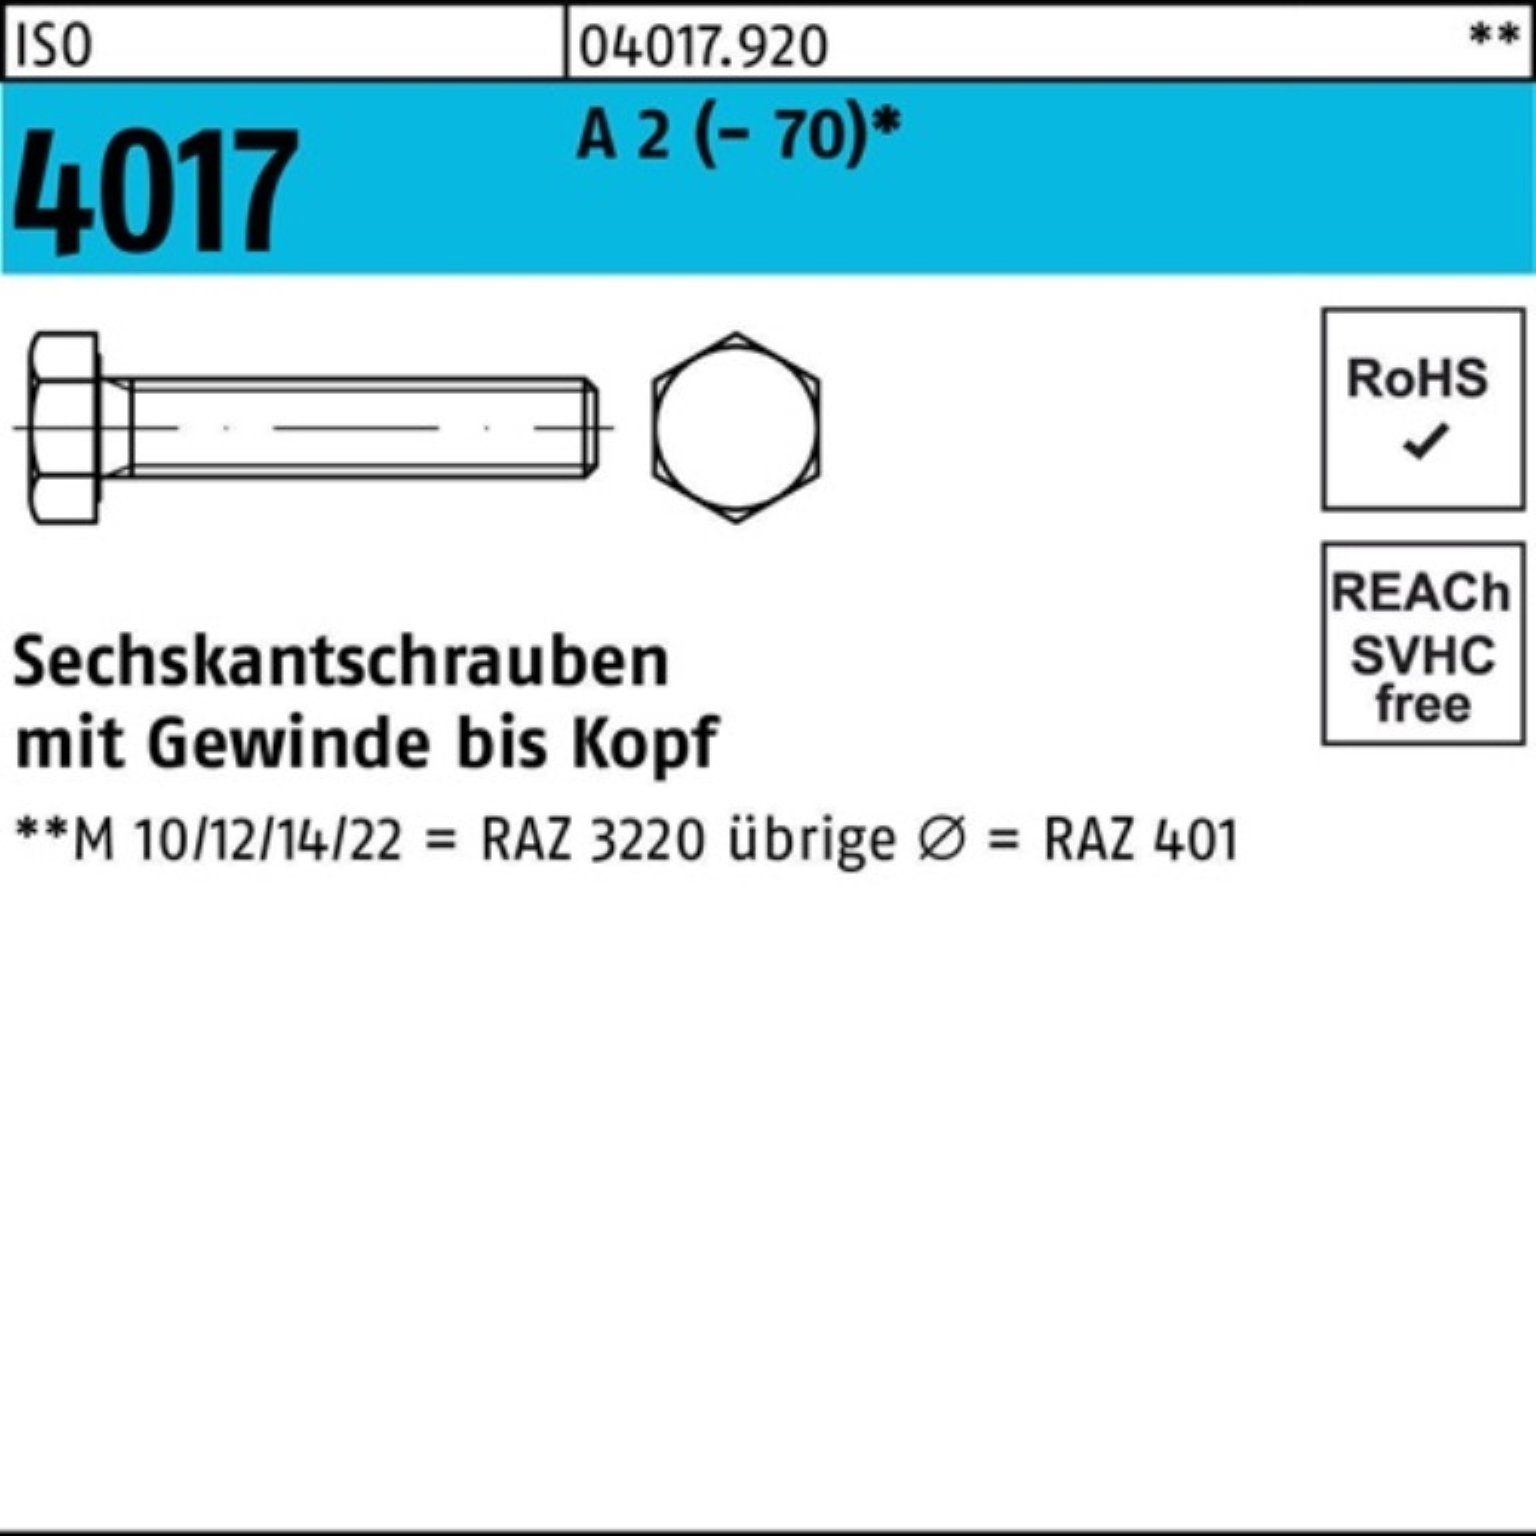 Bufab Sechskantschraube 100er Pack Sechskantschraube ISO 4017 VG M10x 25 A 2 (70) 100 Stück